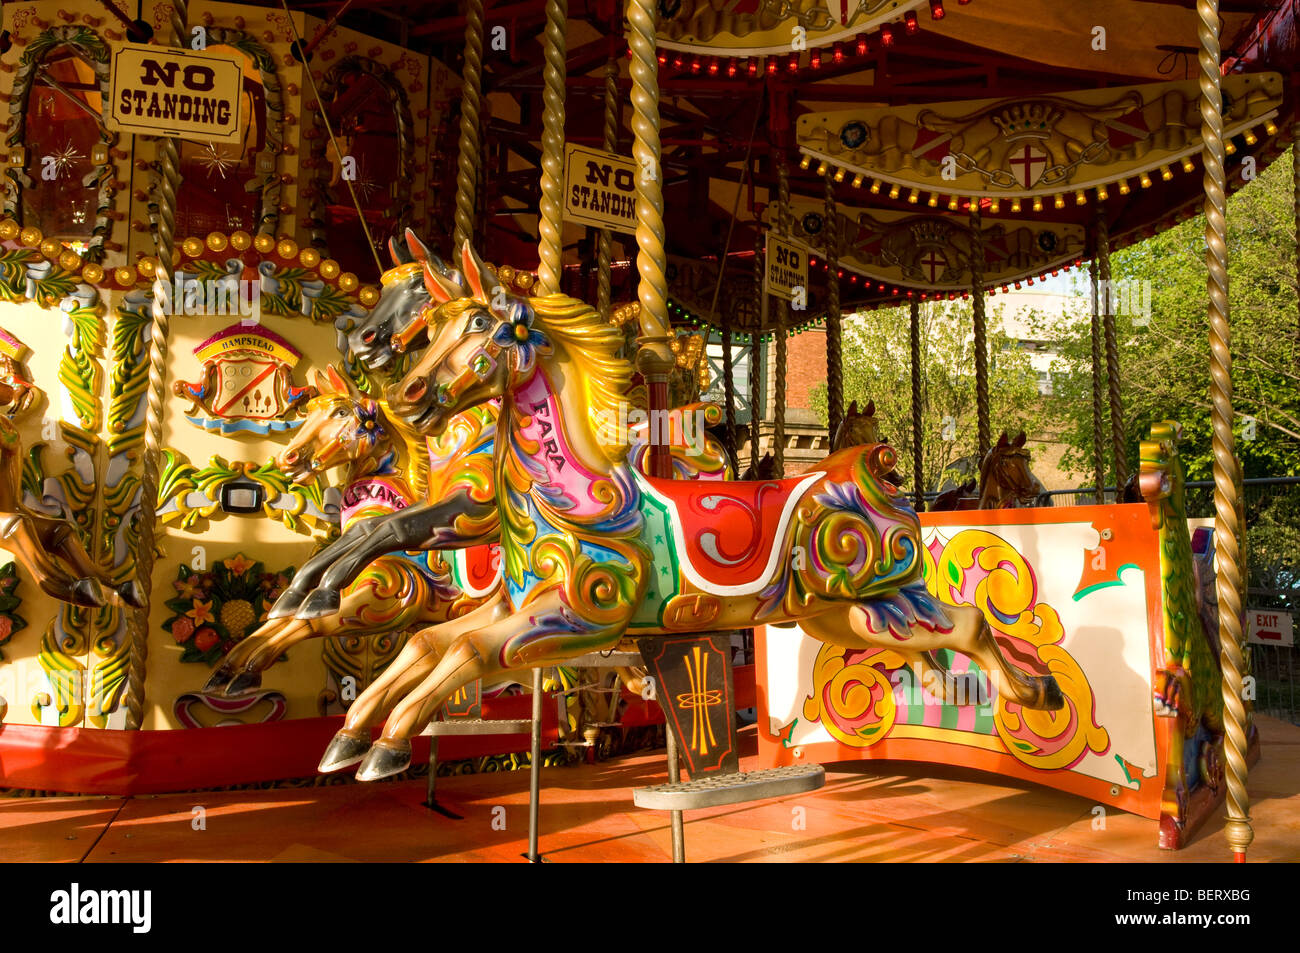 Carrousel de chevaux traditionnels peints dans des couleurs vives, London South Bank. Banque D'Images